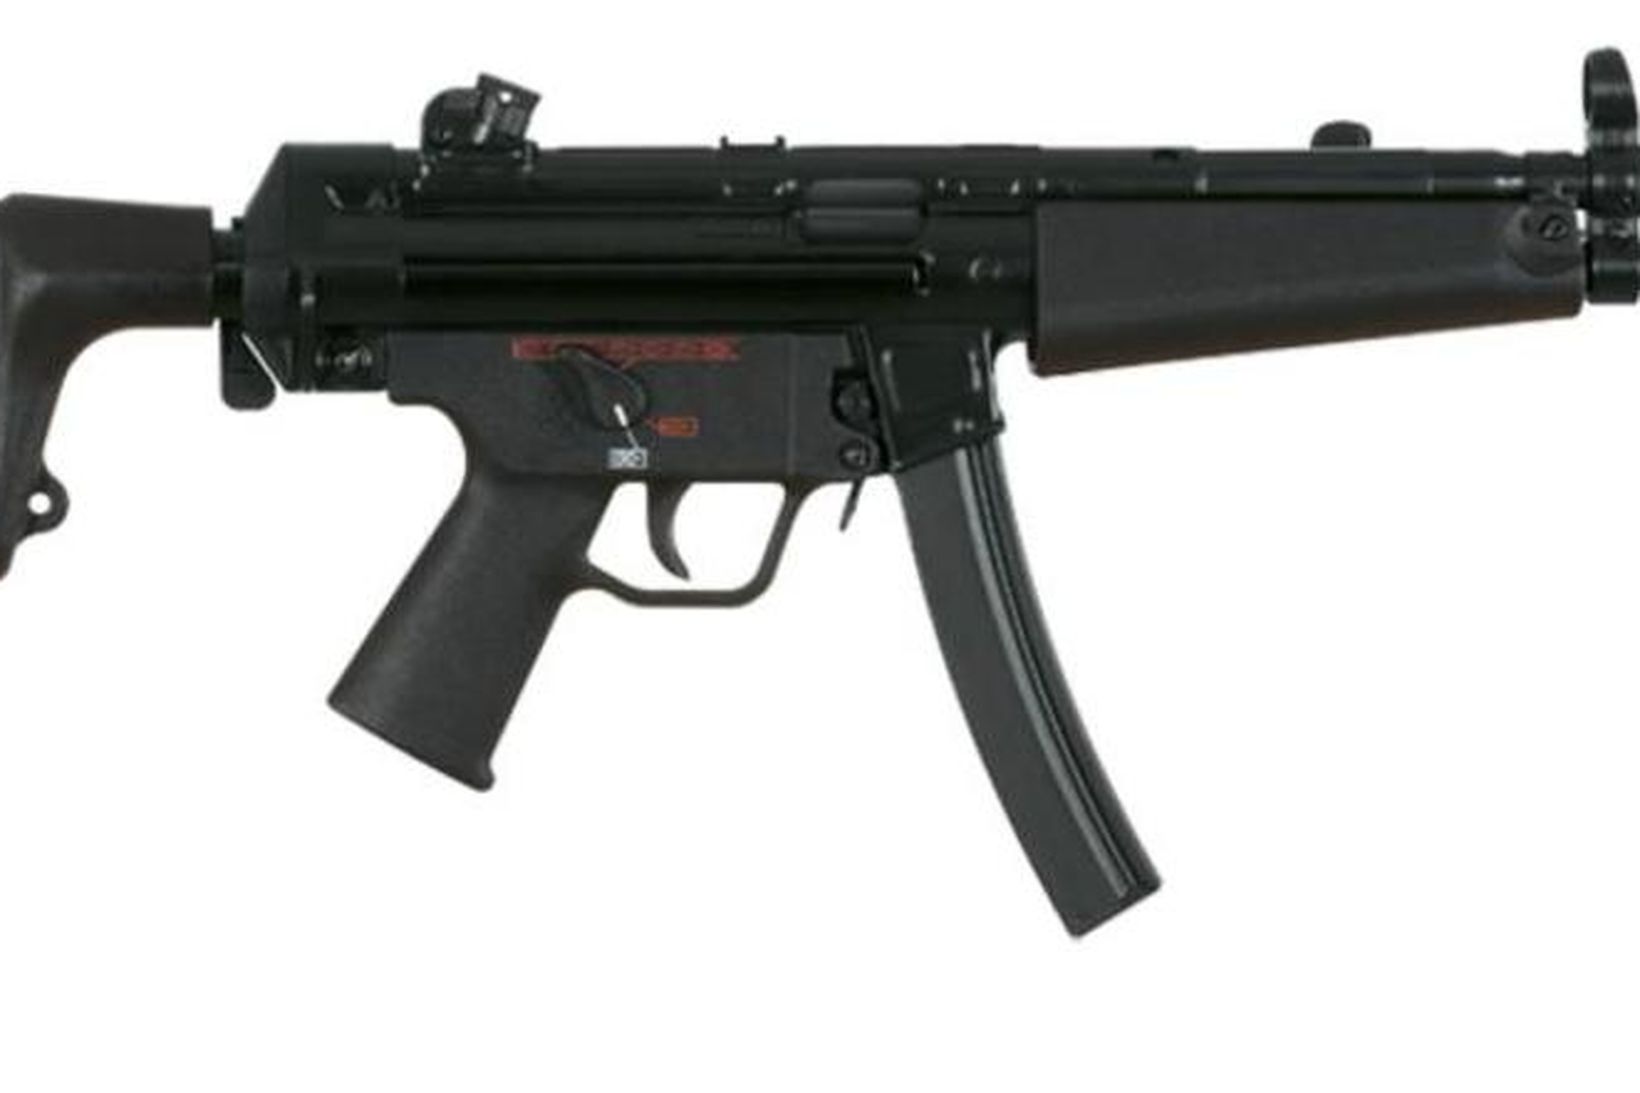 MP5-hríðskotabyssurnar, sem lögreglumenn um allan heim nota.